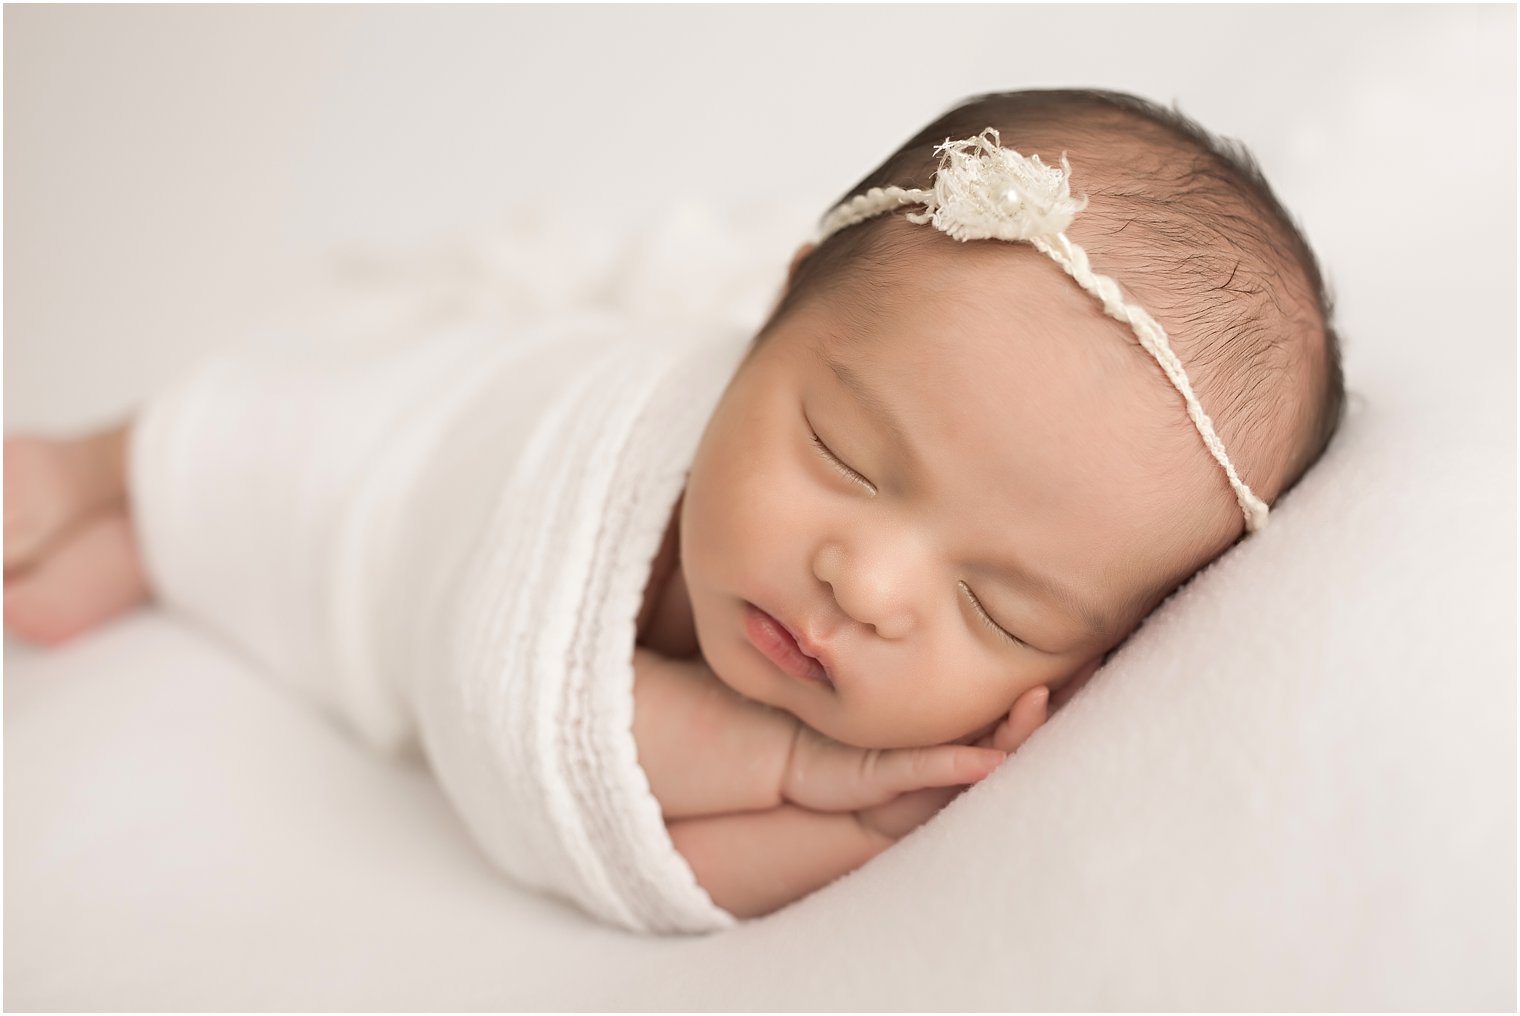 Newborn session for sweet little girl